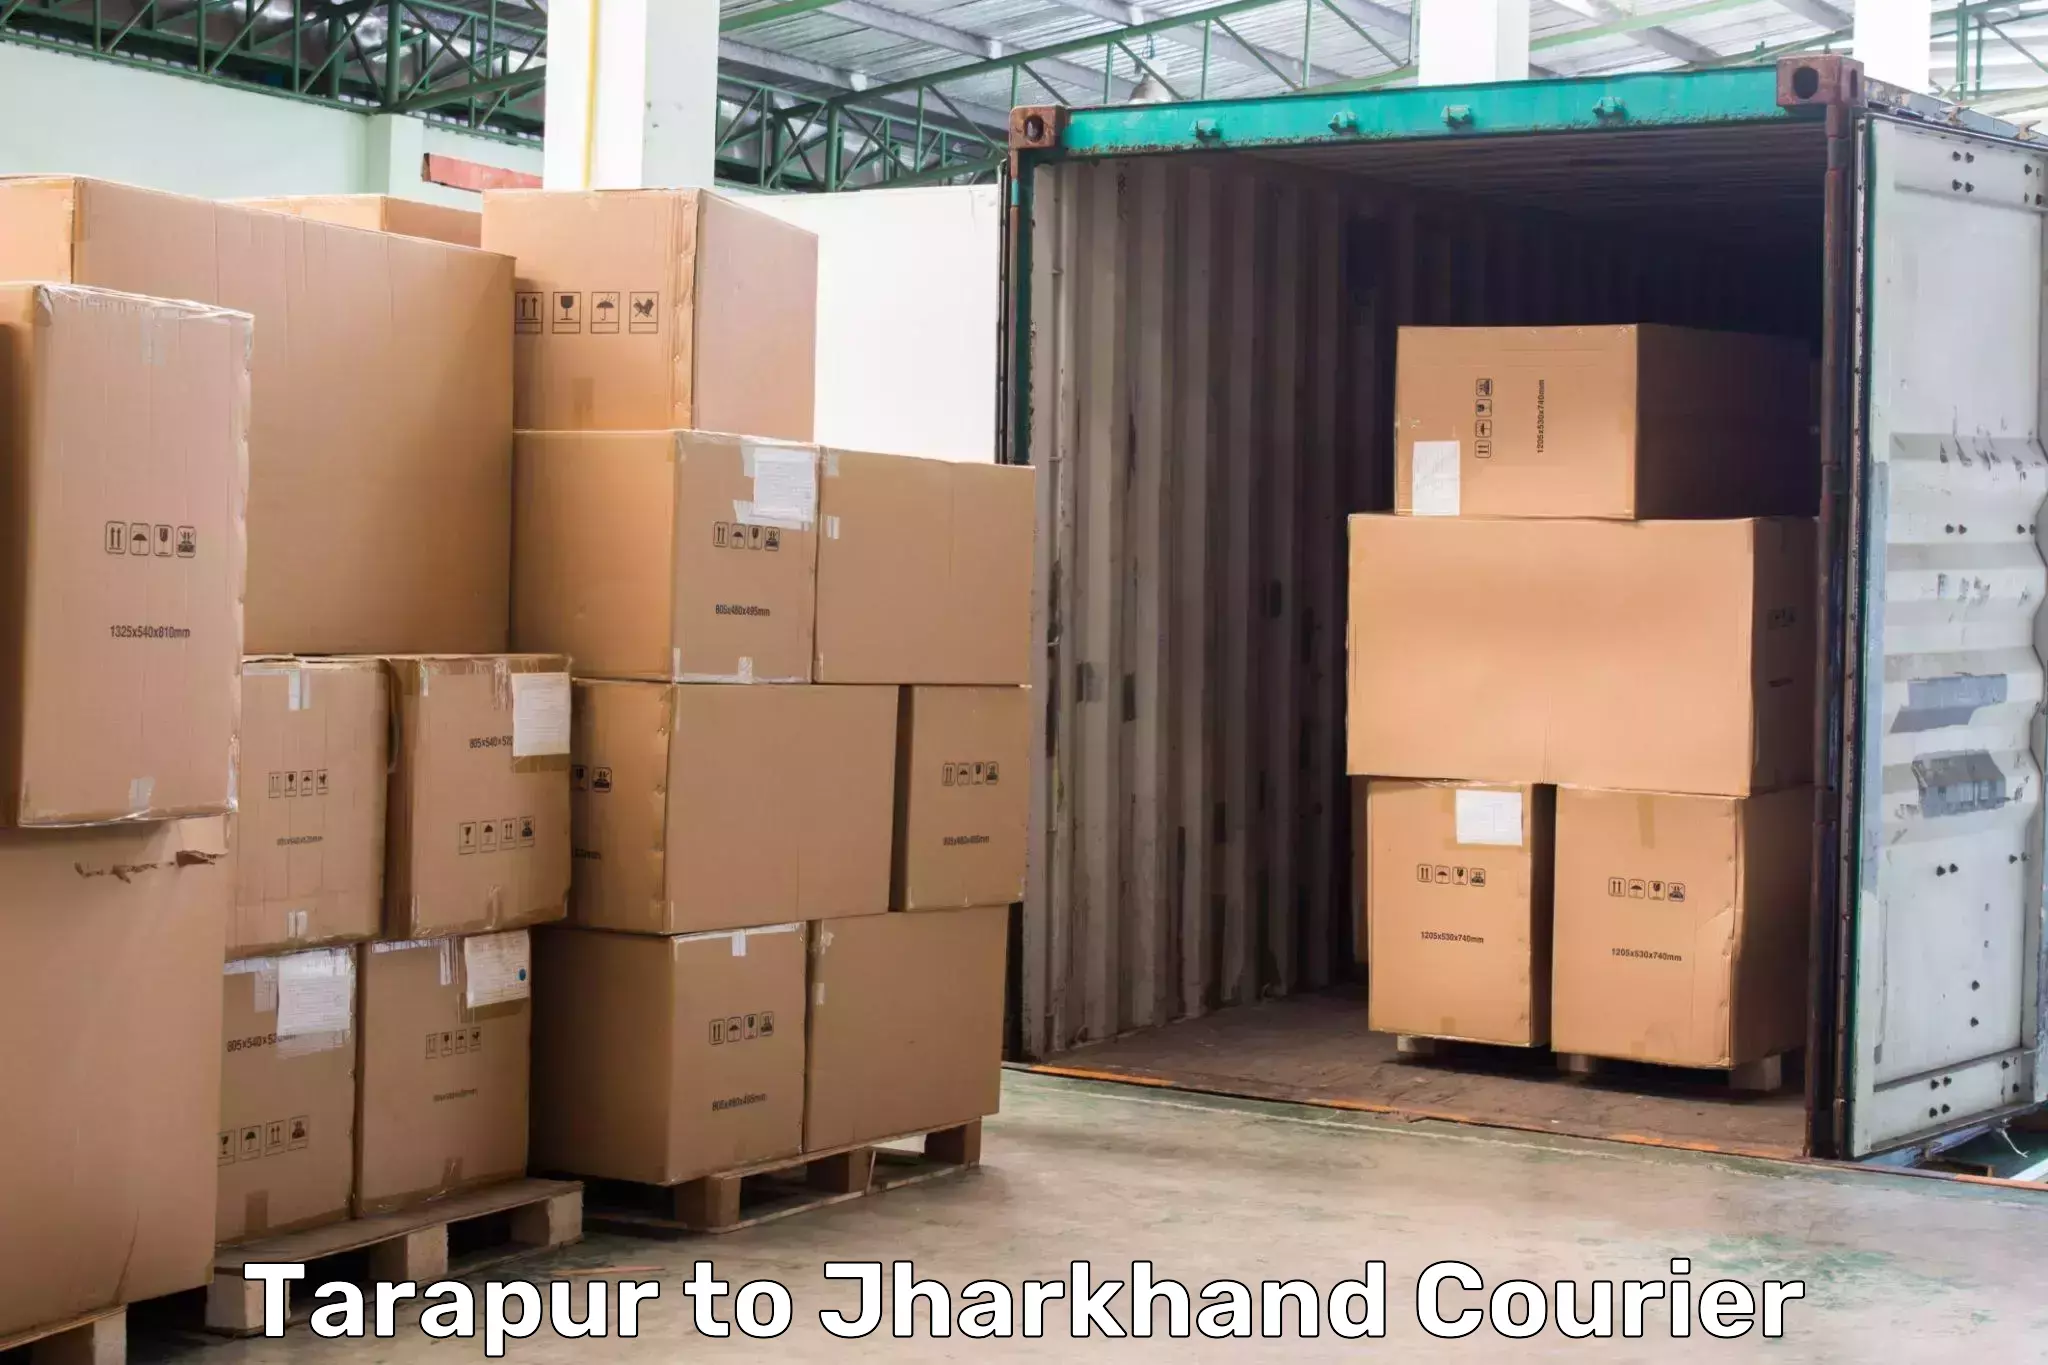 Local delivery service Tarapur to Seraikella